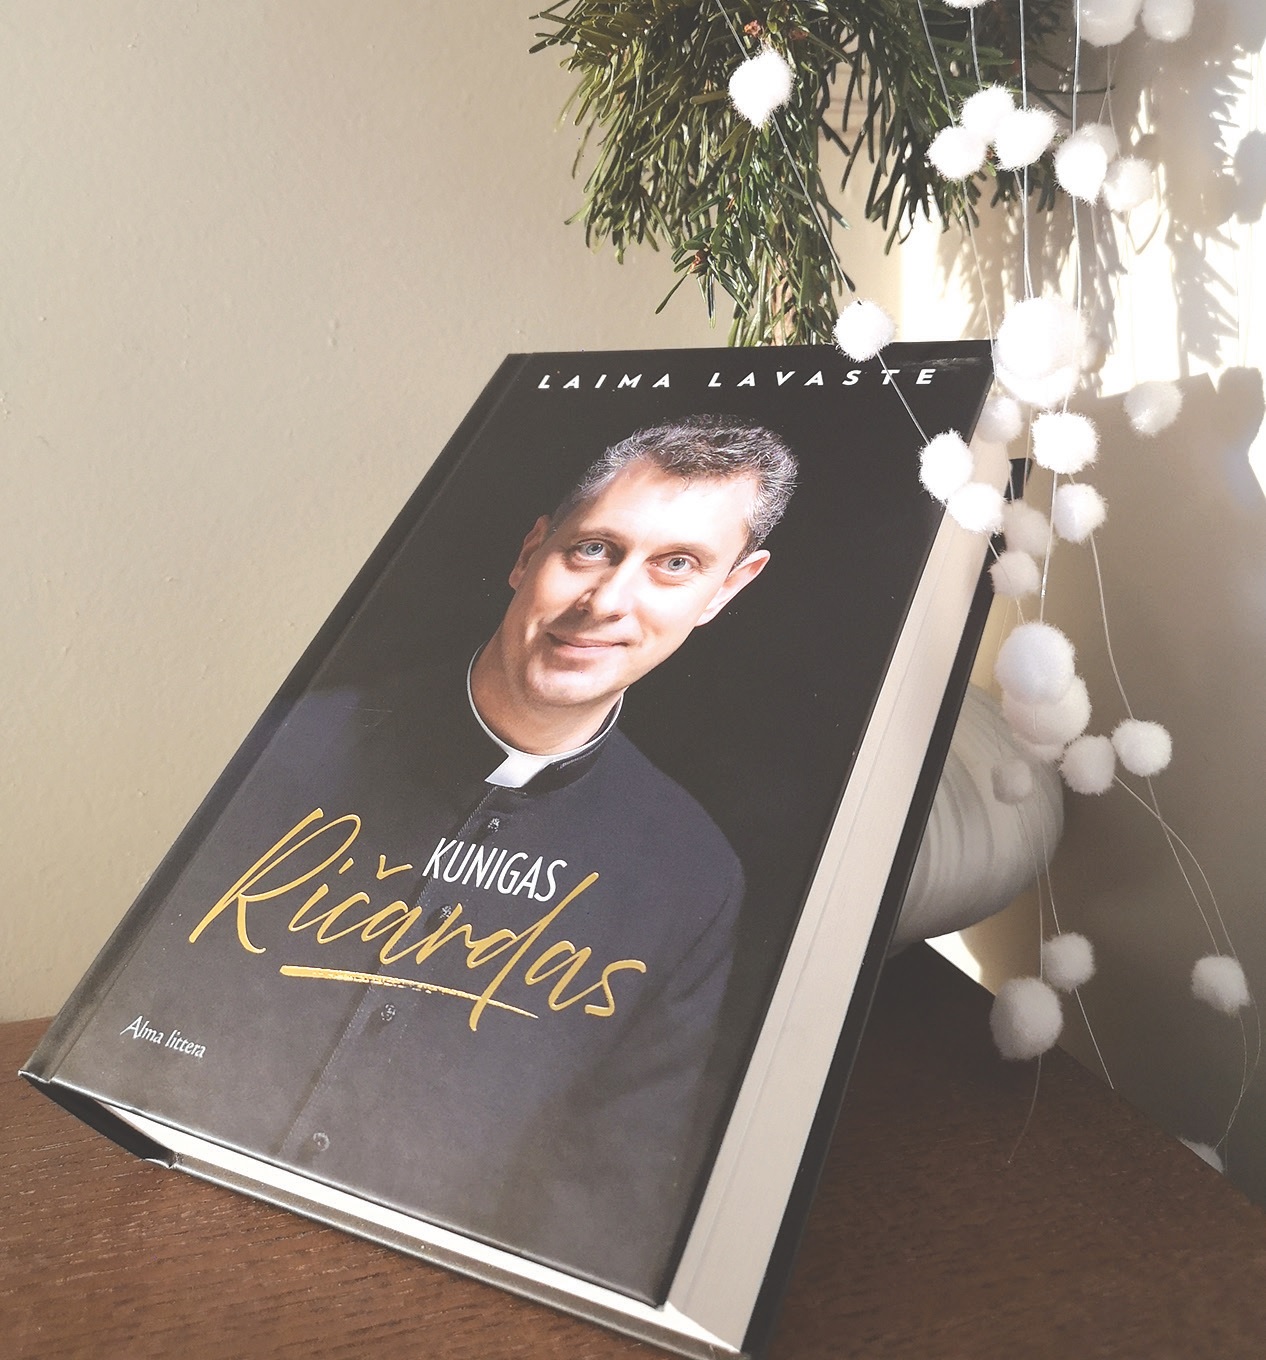 Laimos Lavastes knyga „Kunigas Ričardas“ yra kupina šviesos ir vilties. Tai – gražiausia Kalėdų dovana./Andriaus Kasparavičiaus nuotr.